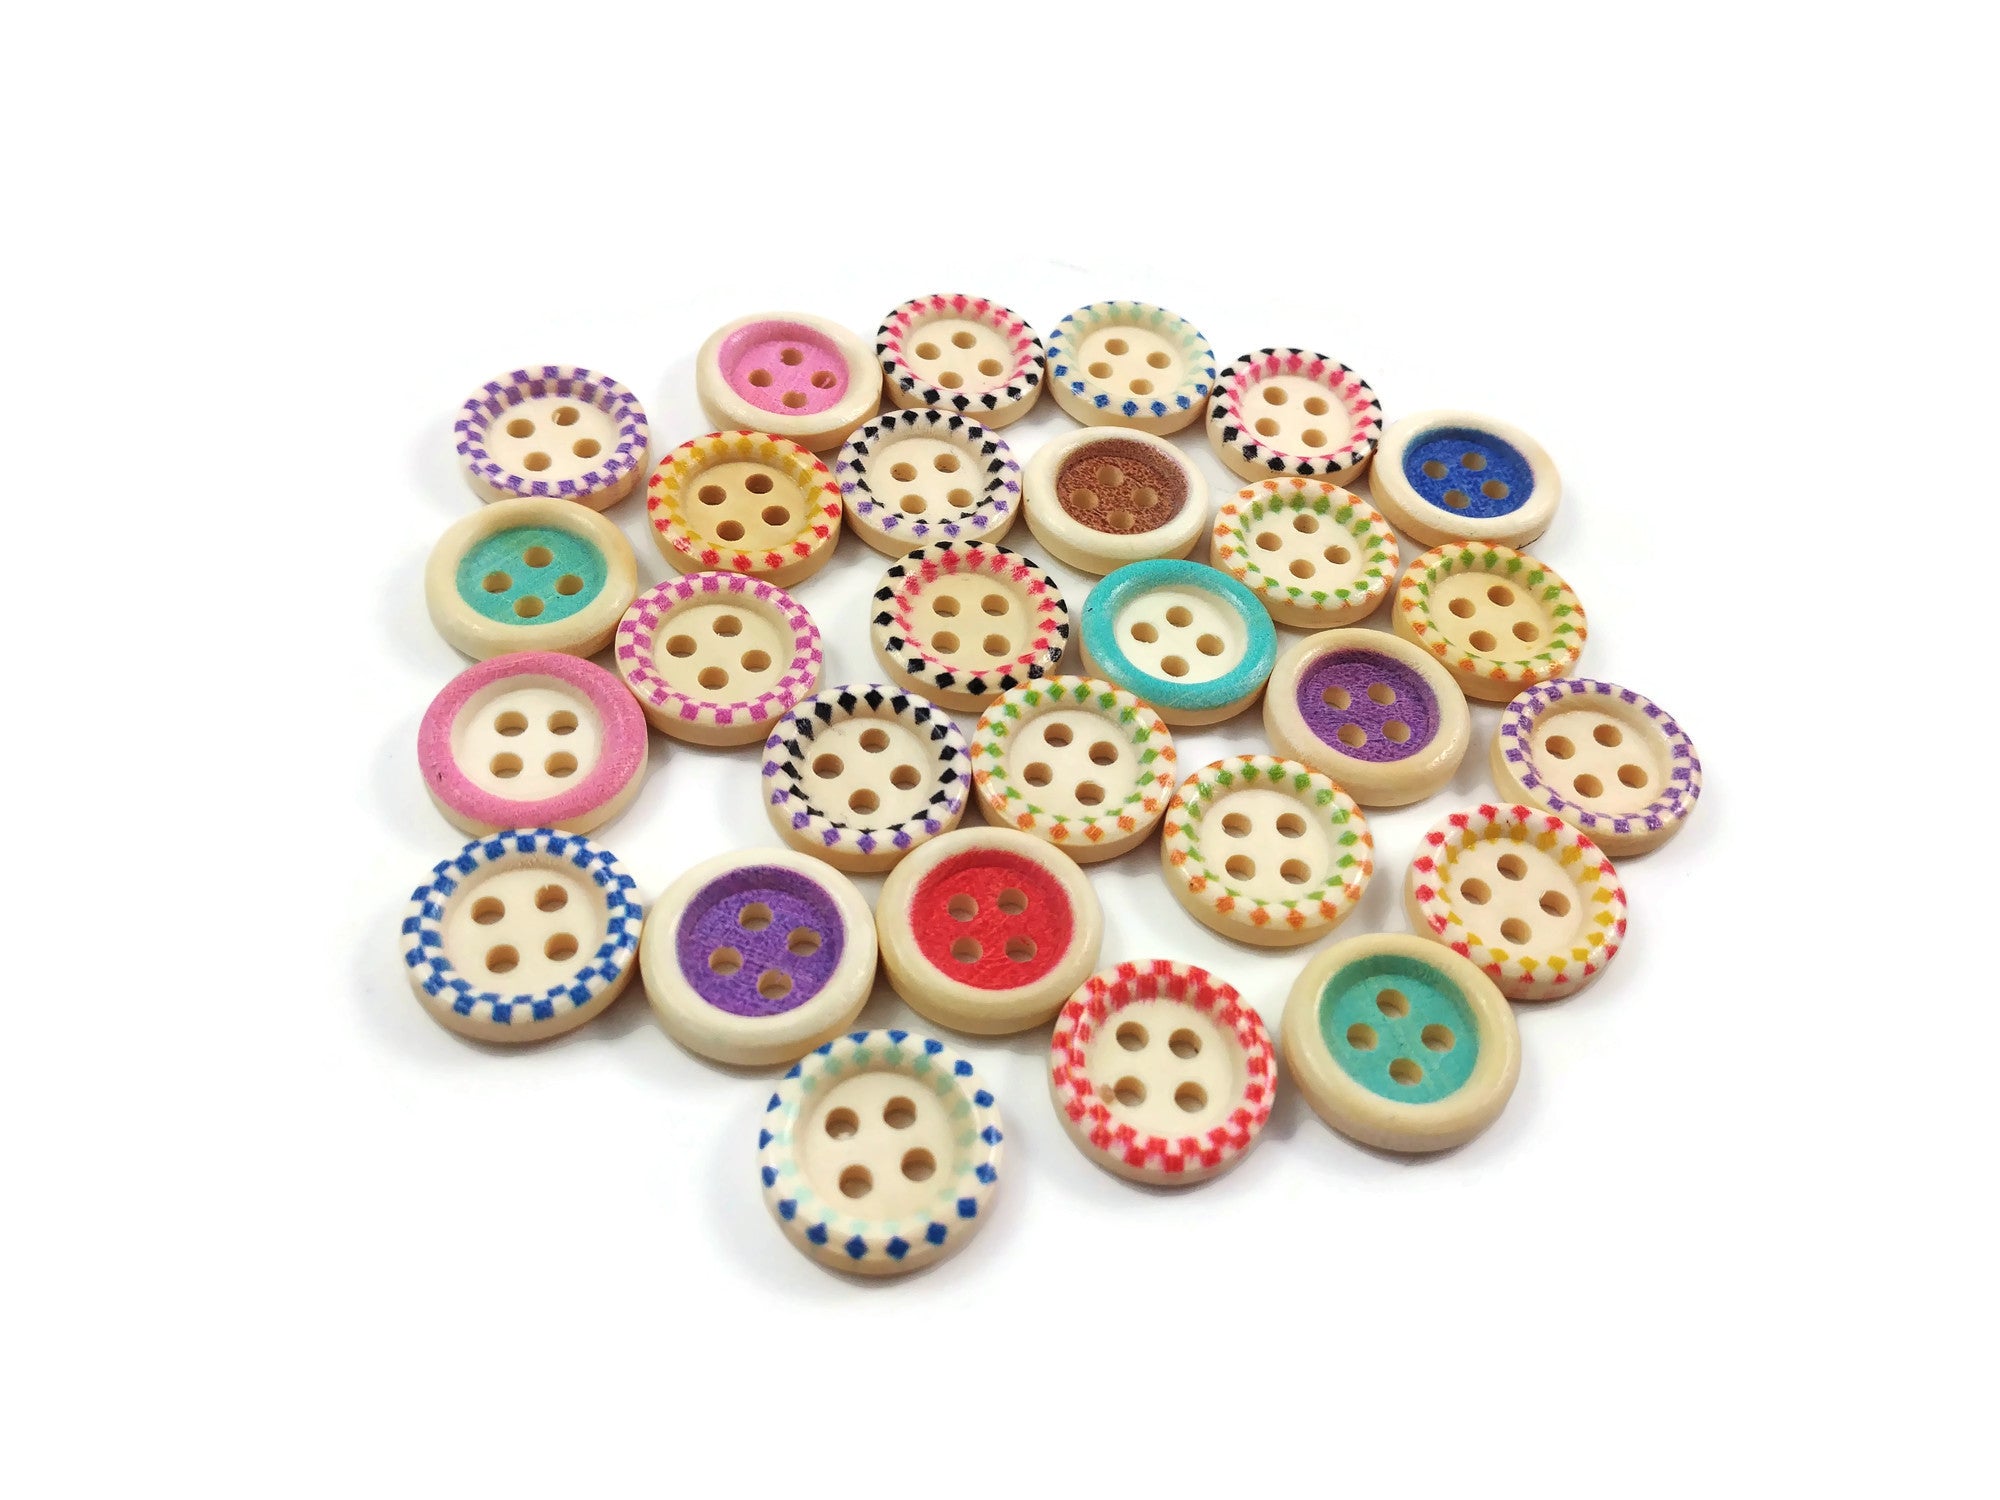 25 Boutons couleurs variées - lot de boutons en bois 15mm